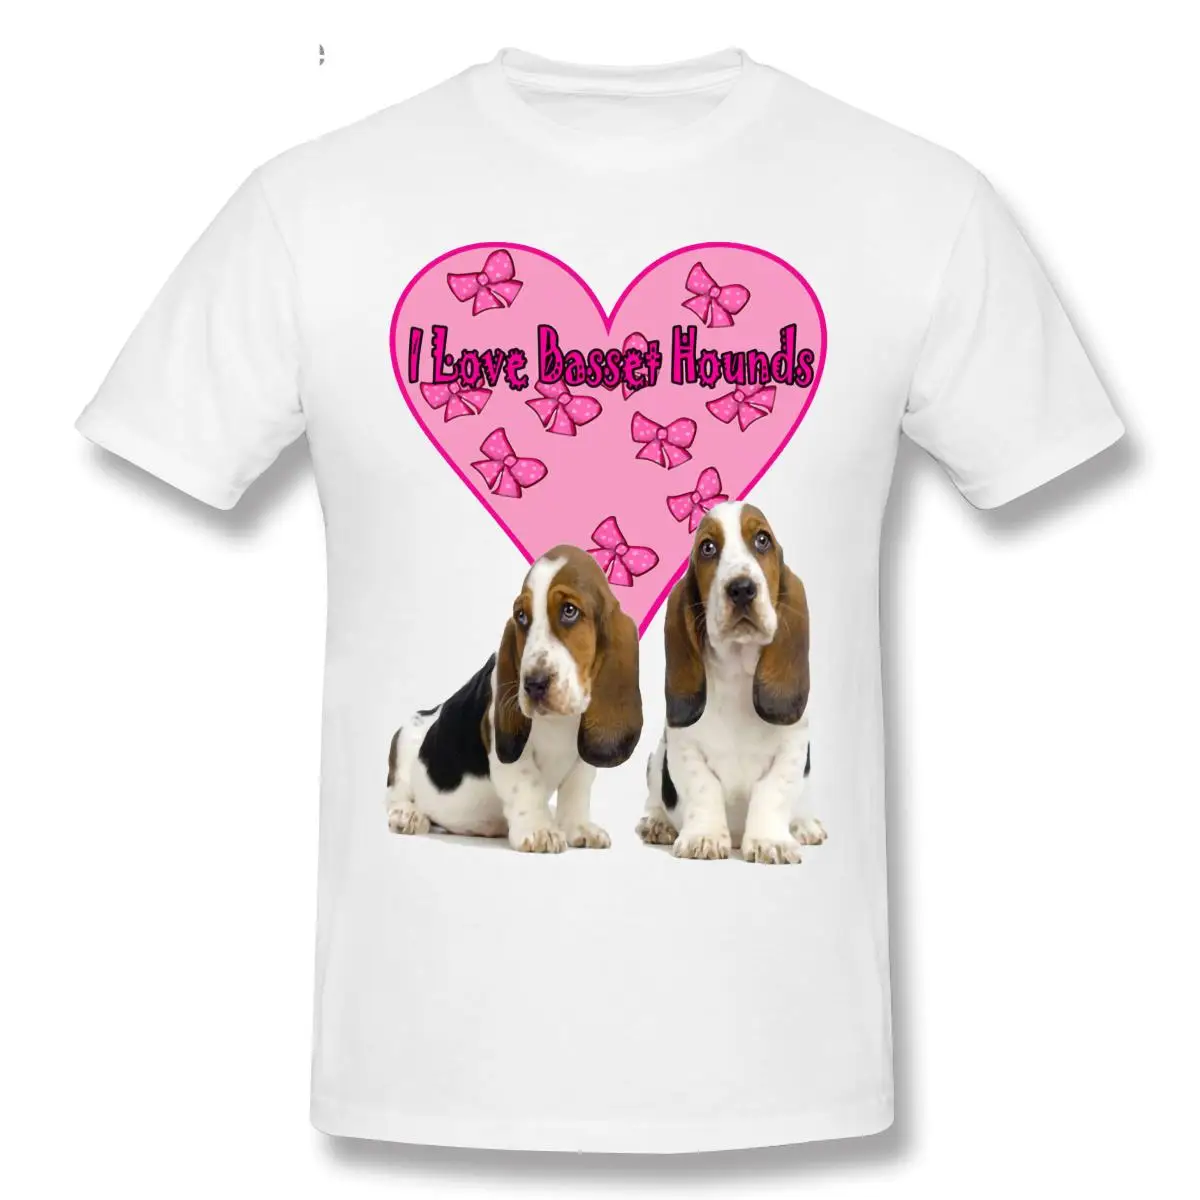 

Basset Hound Dog, I Love Basset Hounds T-Shirt Casual Men O-neck 100% Cotton T shirt Tee Top